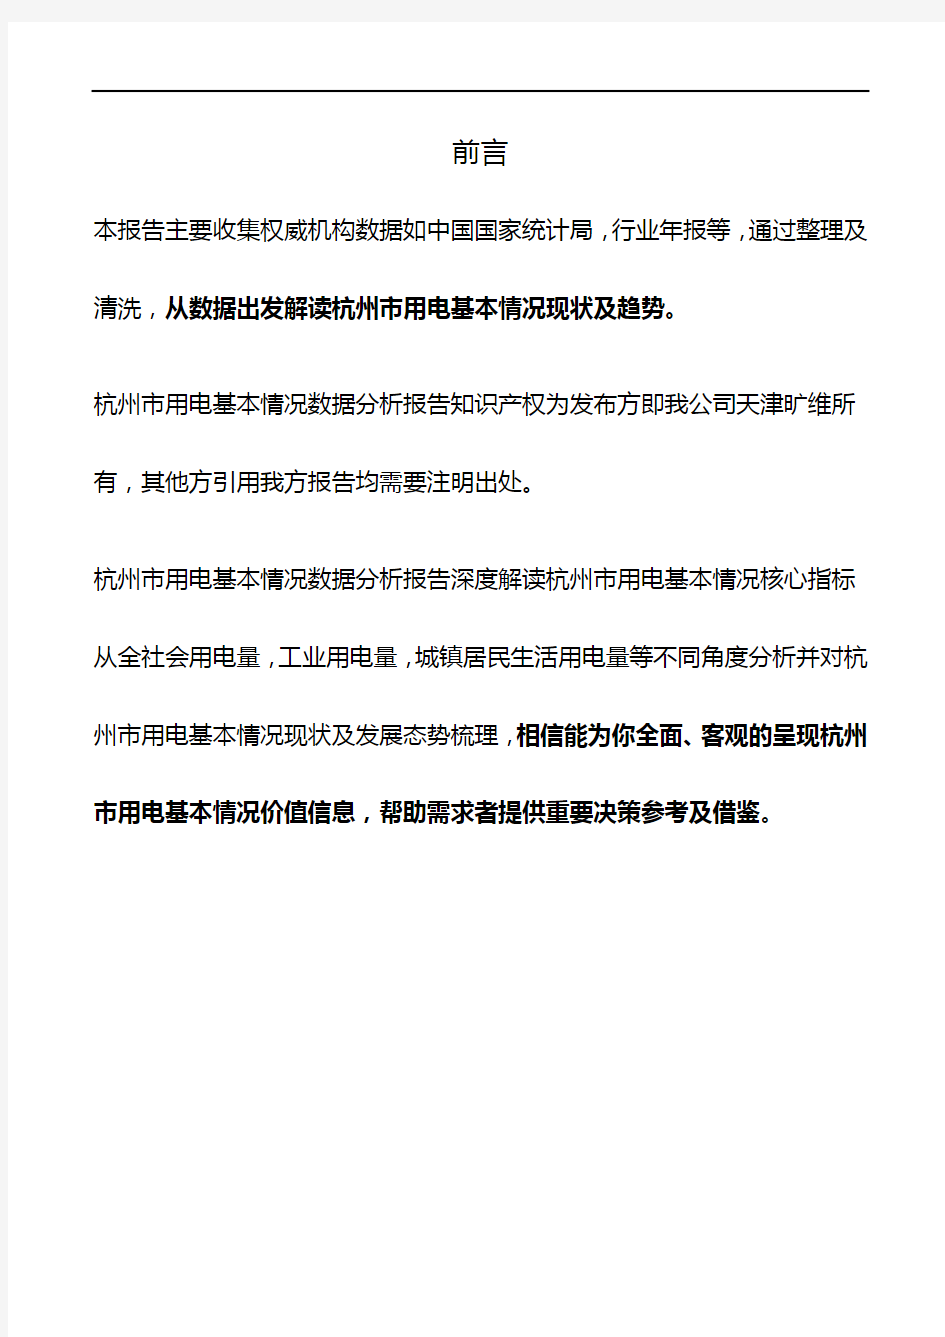 杭州市(全市)用电基本情况3年数据分析报告2019版